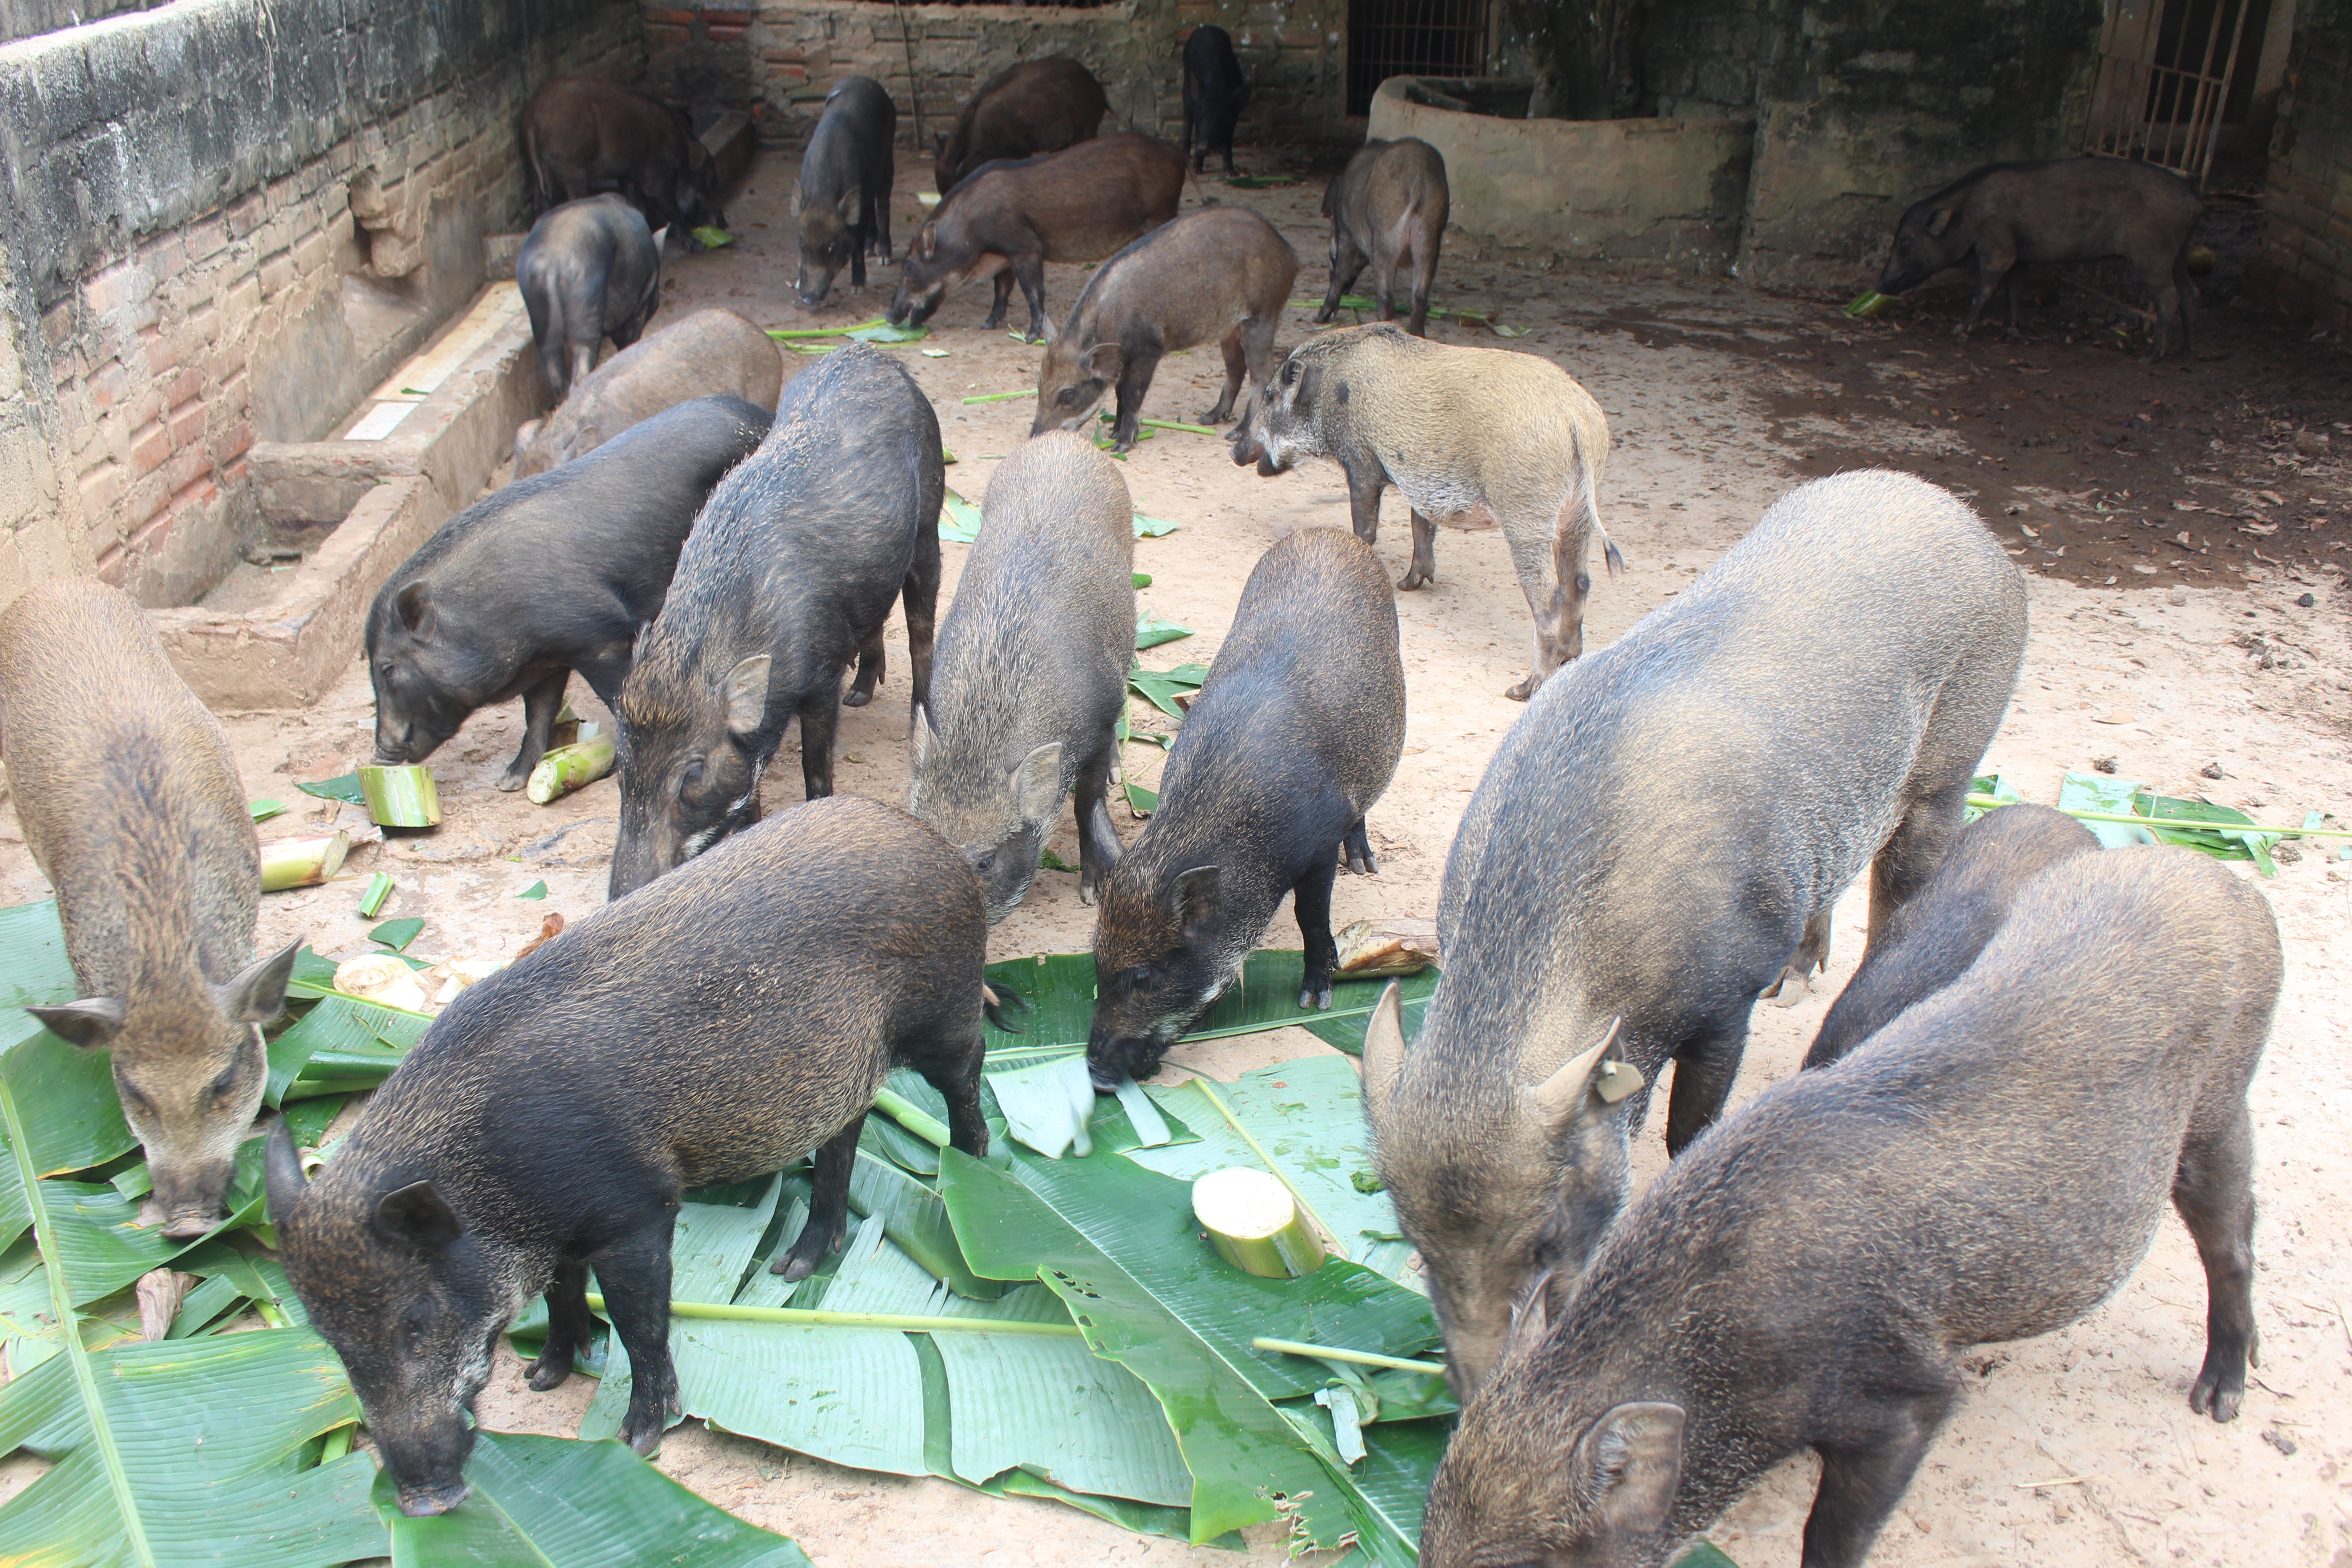 Lợn đen vùng miền núi và lợn rừng nuôi đang được người tiêu dùng lựa chọn làm thực phẩm trong những ngày tết. Vì vậy, người dân vùng miền núi nhiều năm nay đầu tư nuôi lợn rừng, thu nhập cao. Cuối năm, giá lợn rừng phổ biến từ 100.000 - 120.000 đồng/kg thịt hơi. Ảnh: Xuân Hoàng